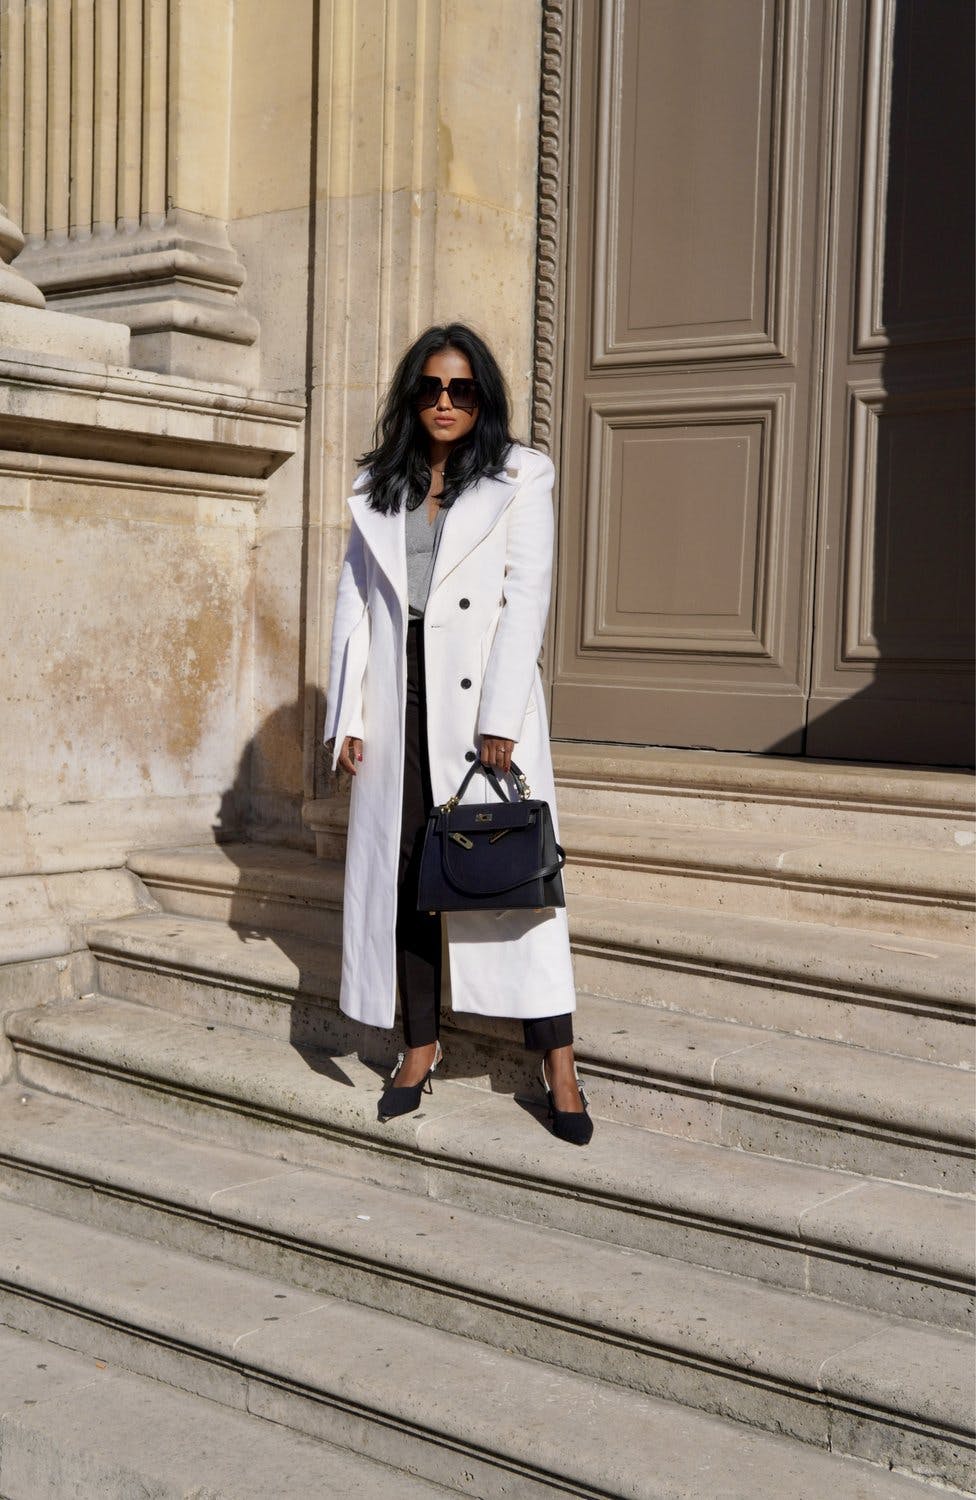 Sachini wearing a white Karen Millen coat in Paris